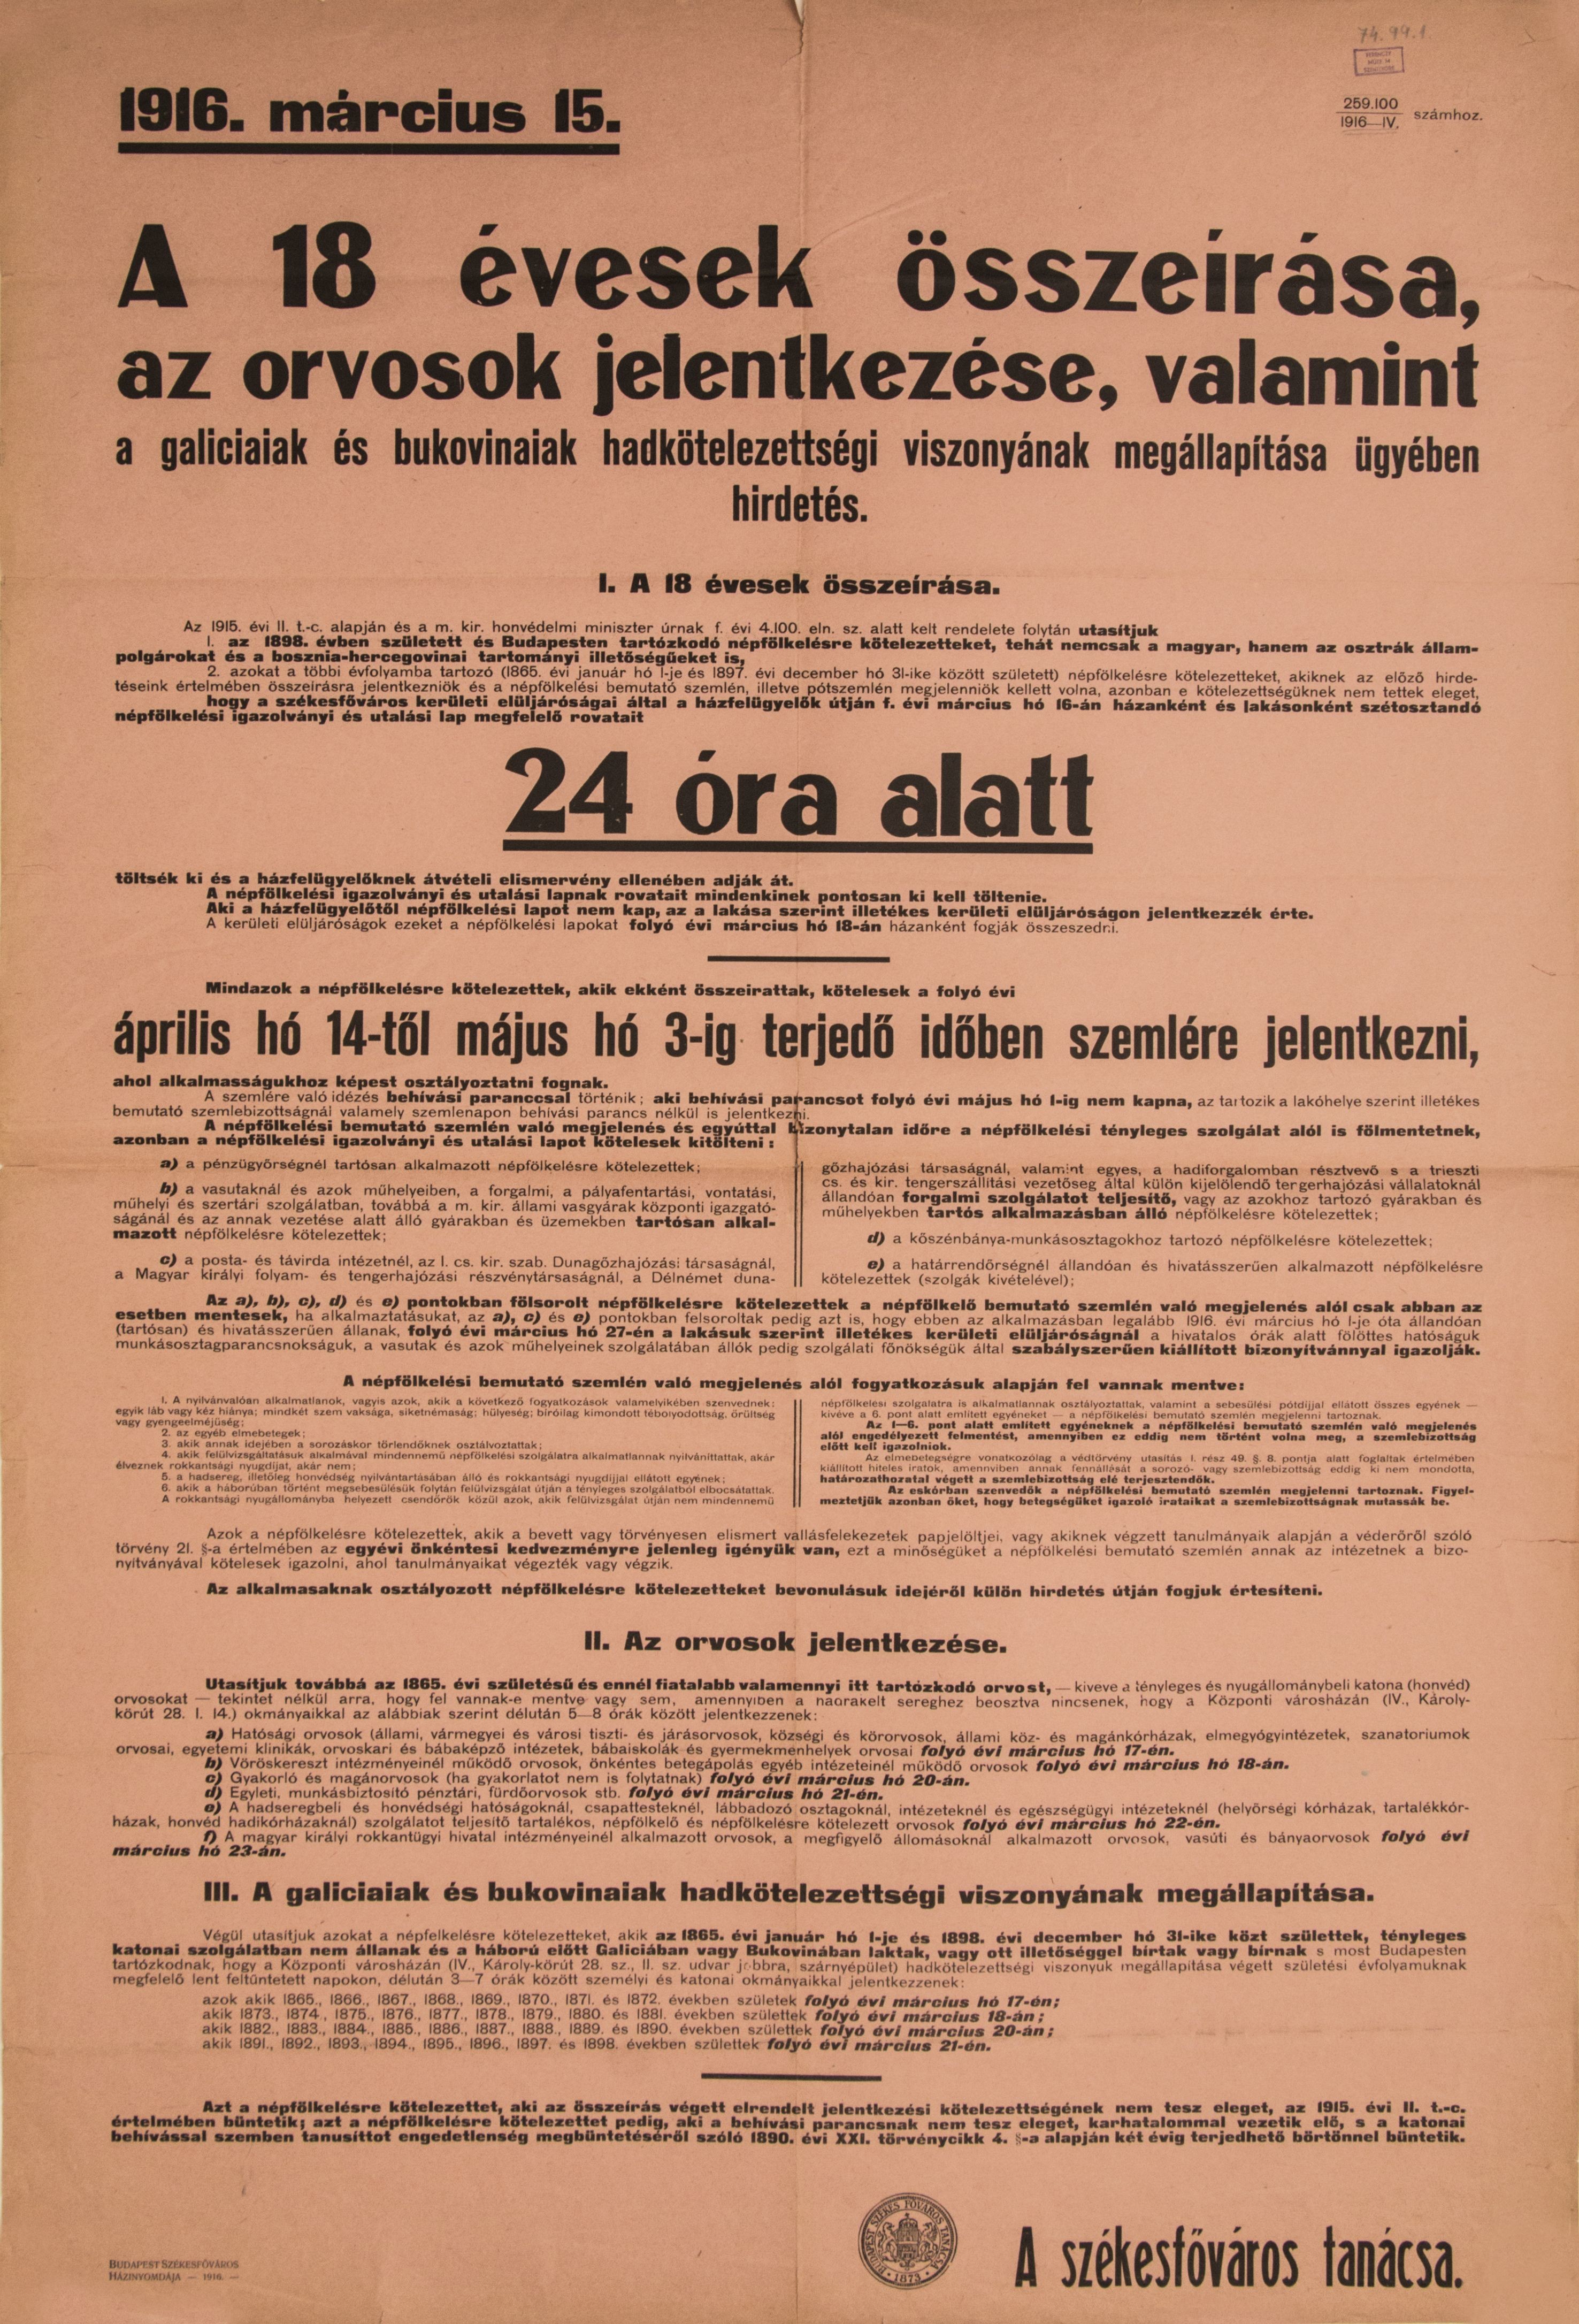 A 18 évesek összeírása, orvosok jelentkezése és hadkötelezettséggel kapcsolatos hirdetés, (rózsaszín papír, fekete betű) 1916.03.15. (Ferenczy Múzeumi Centrum CC BY-NC-SA)